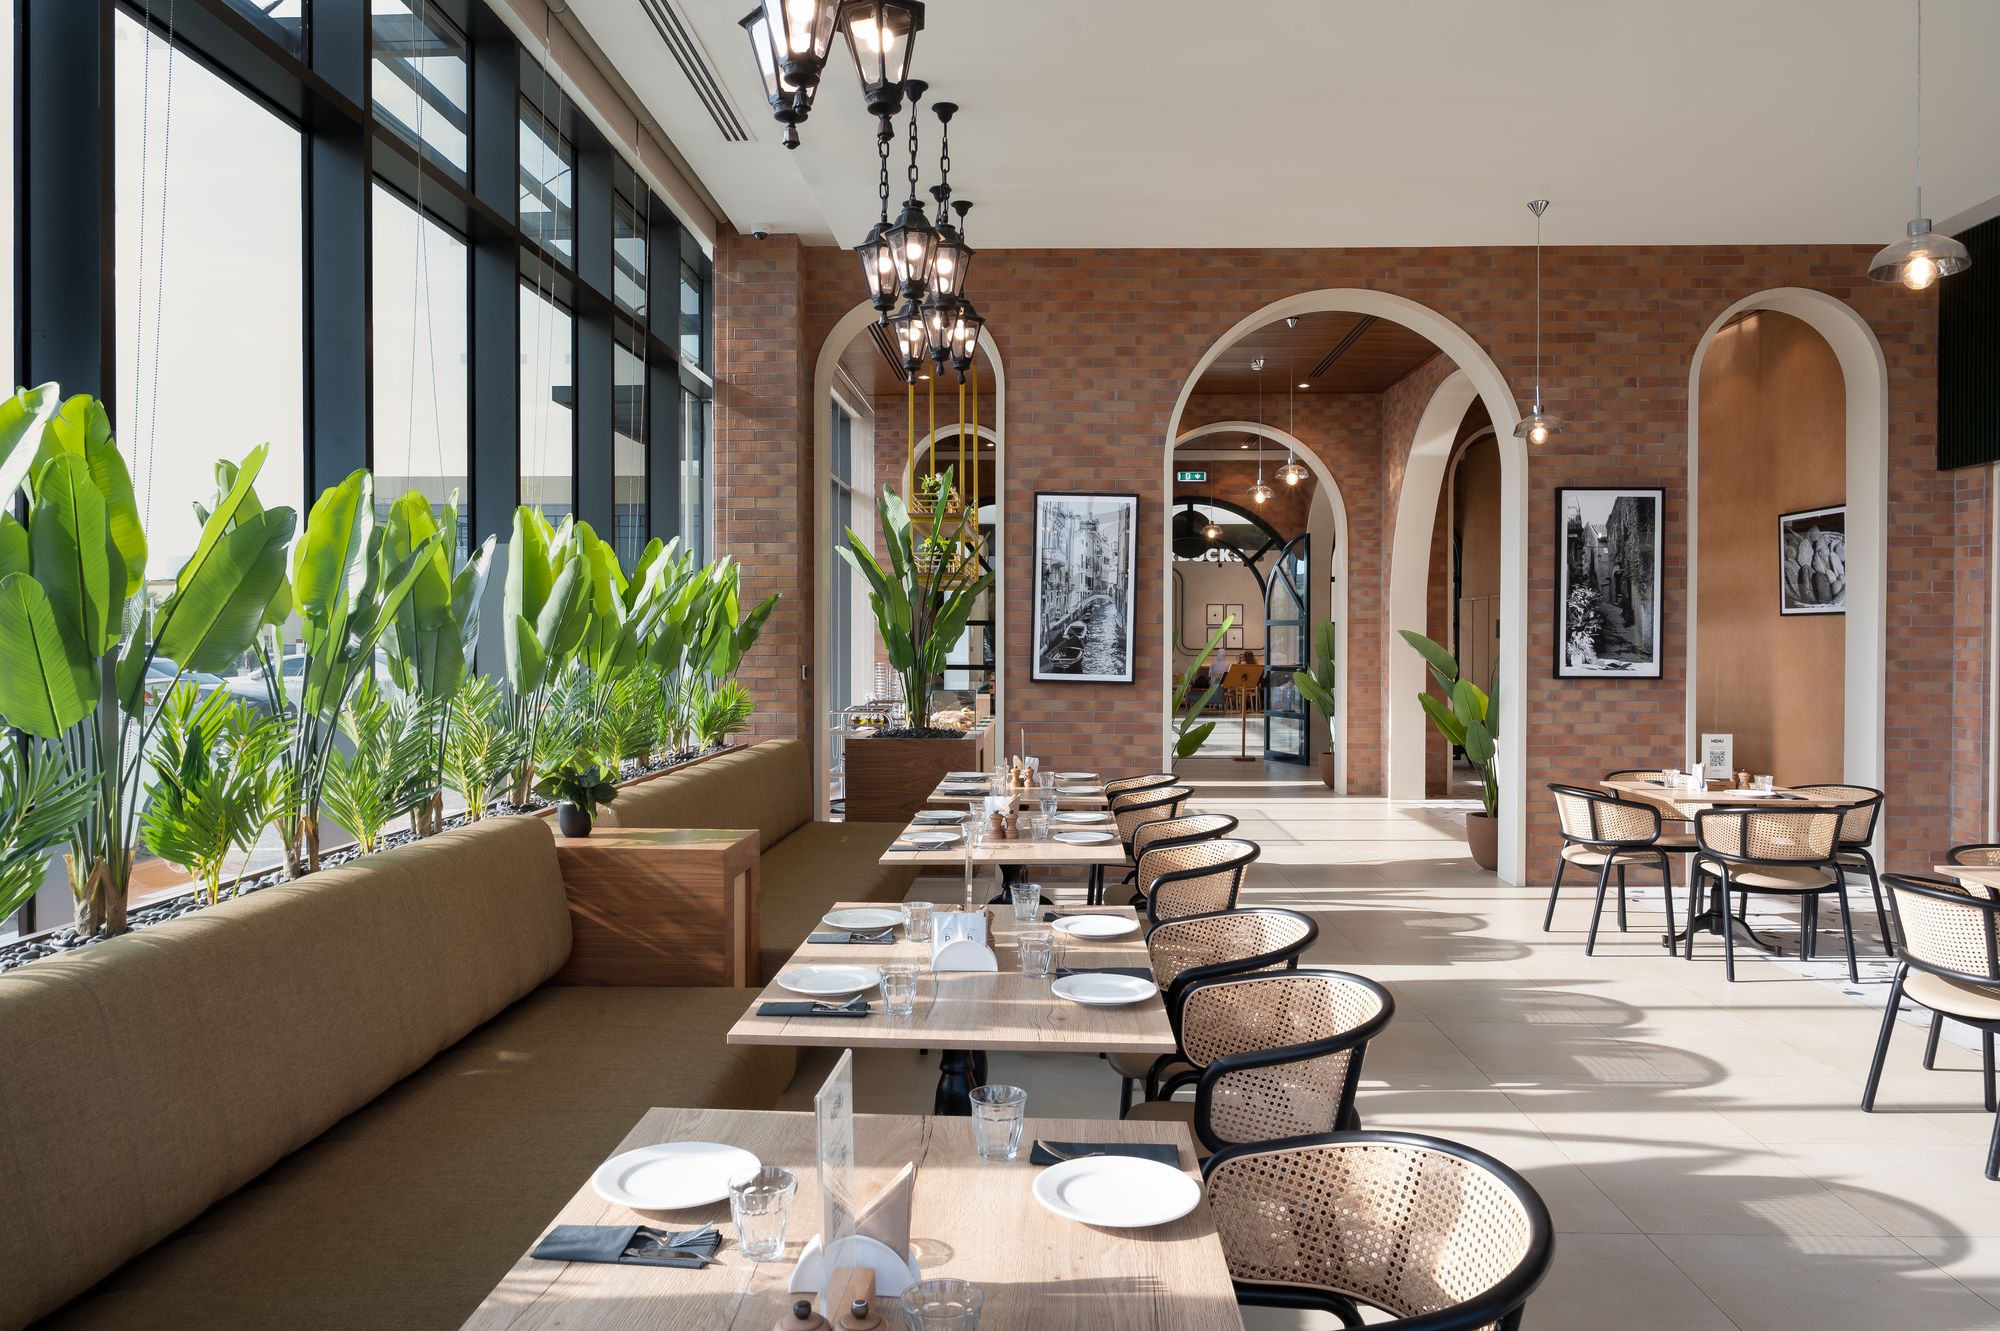 图片[4]|IL PASSAGGIO餐厅|ART-Arrakis | 建筑室内设计的创新与灵感